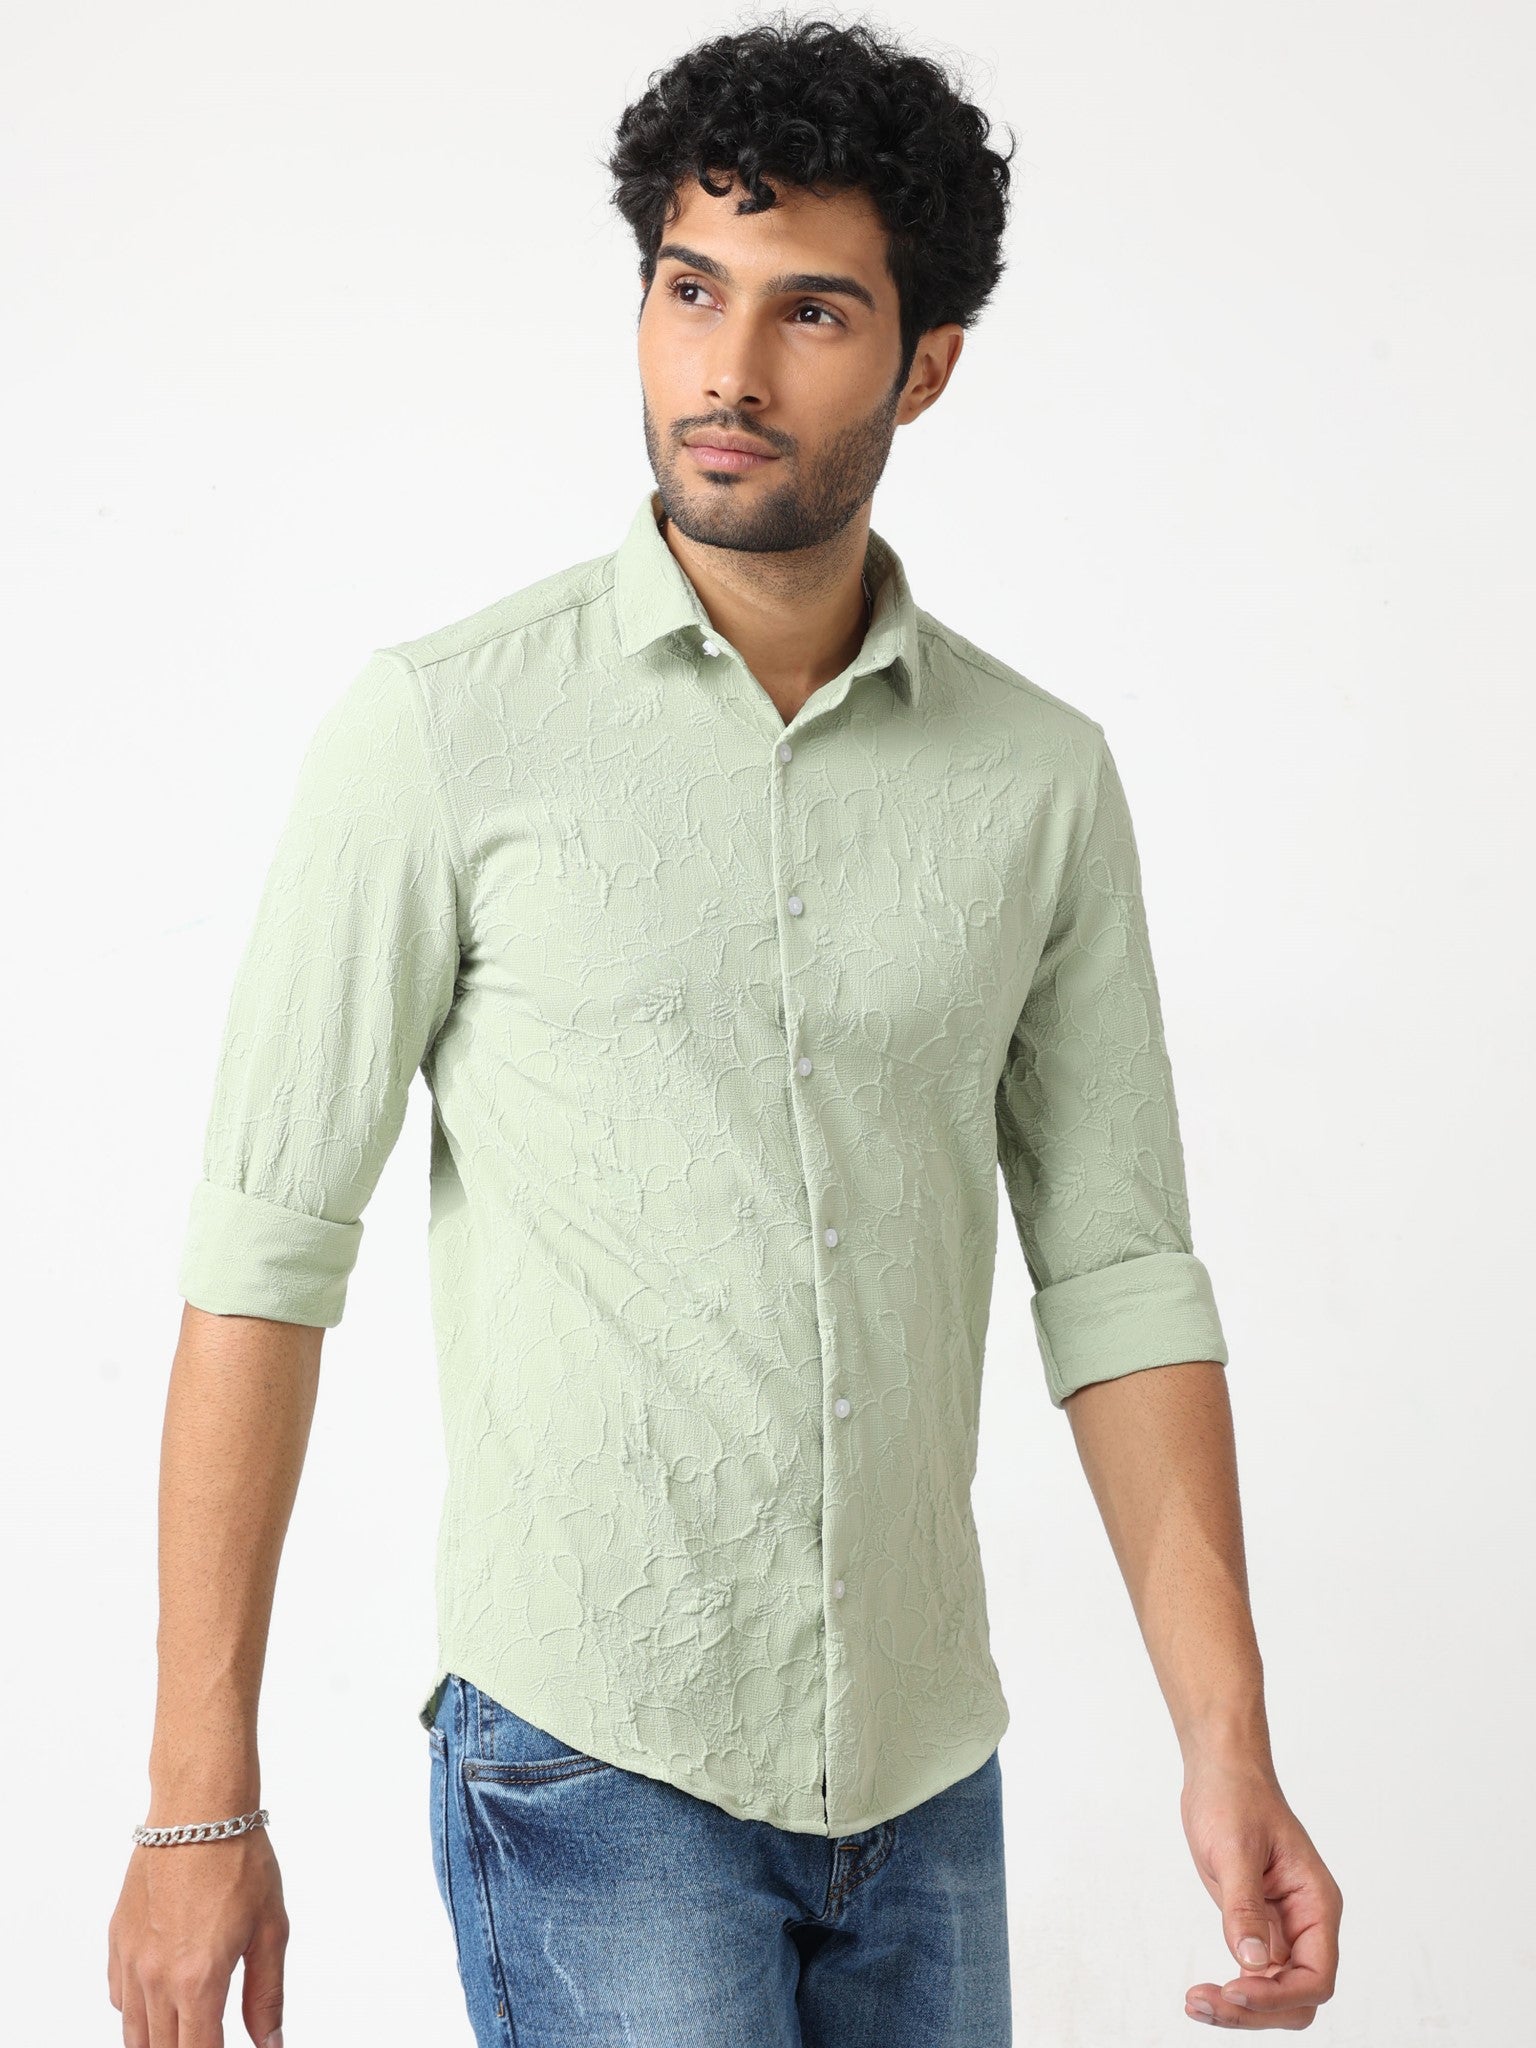 Abstract Jacquard Green Shirt